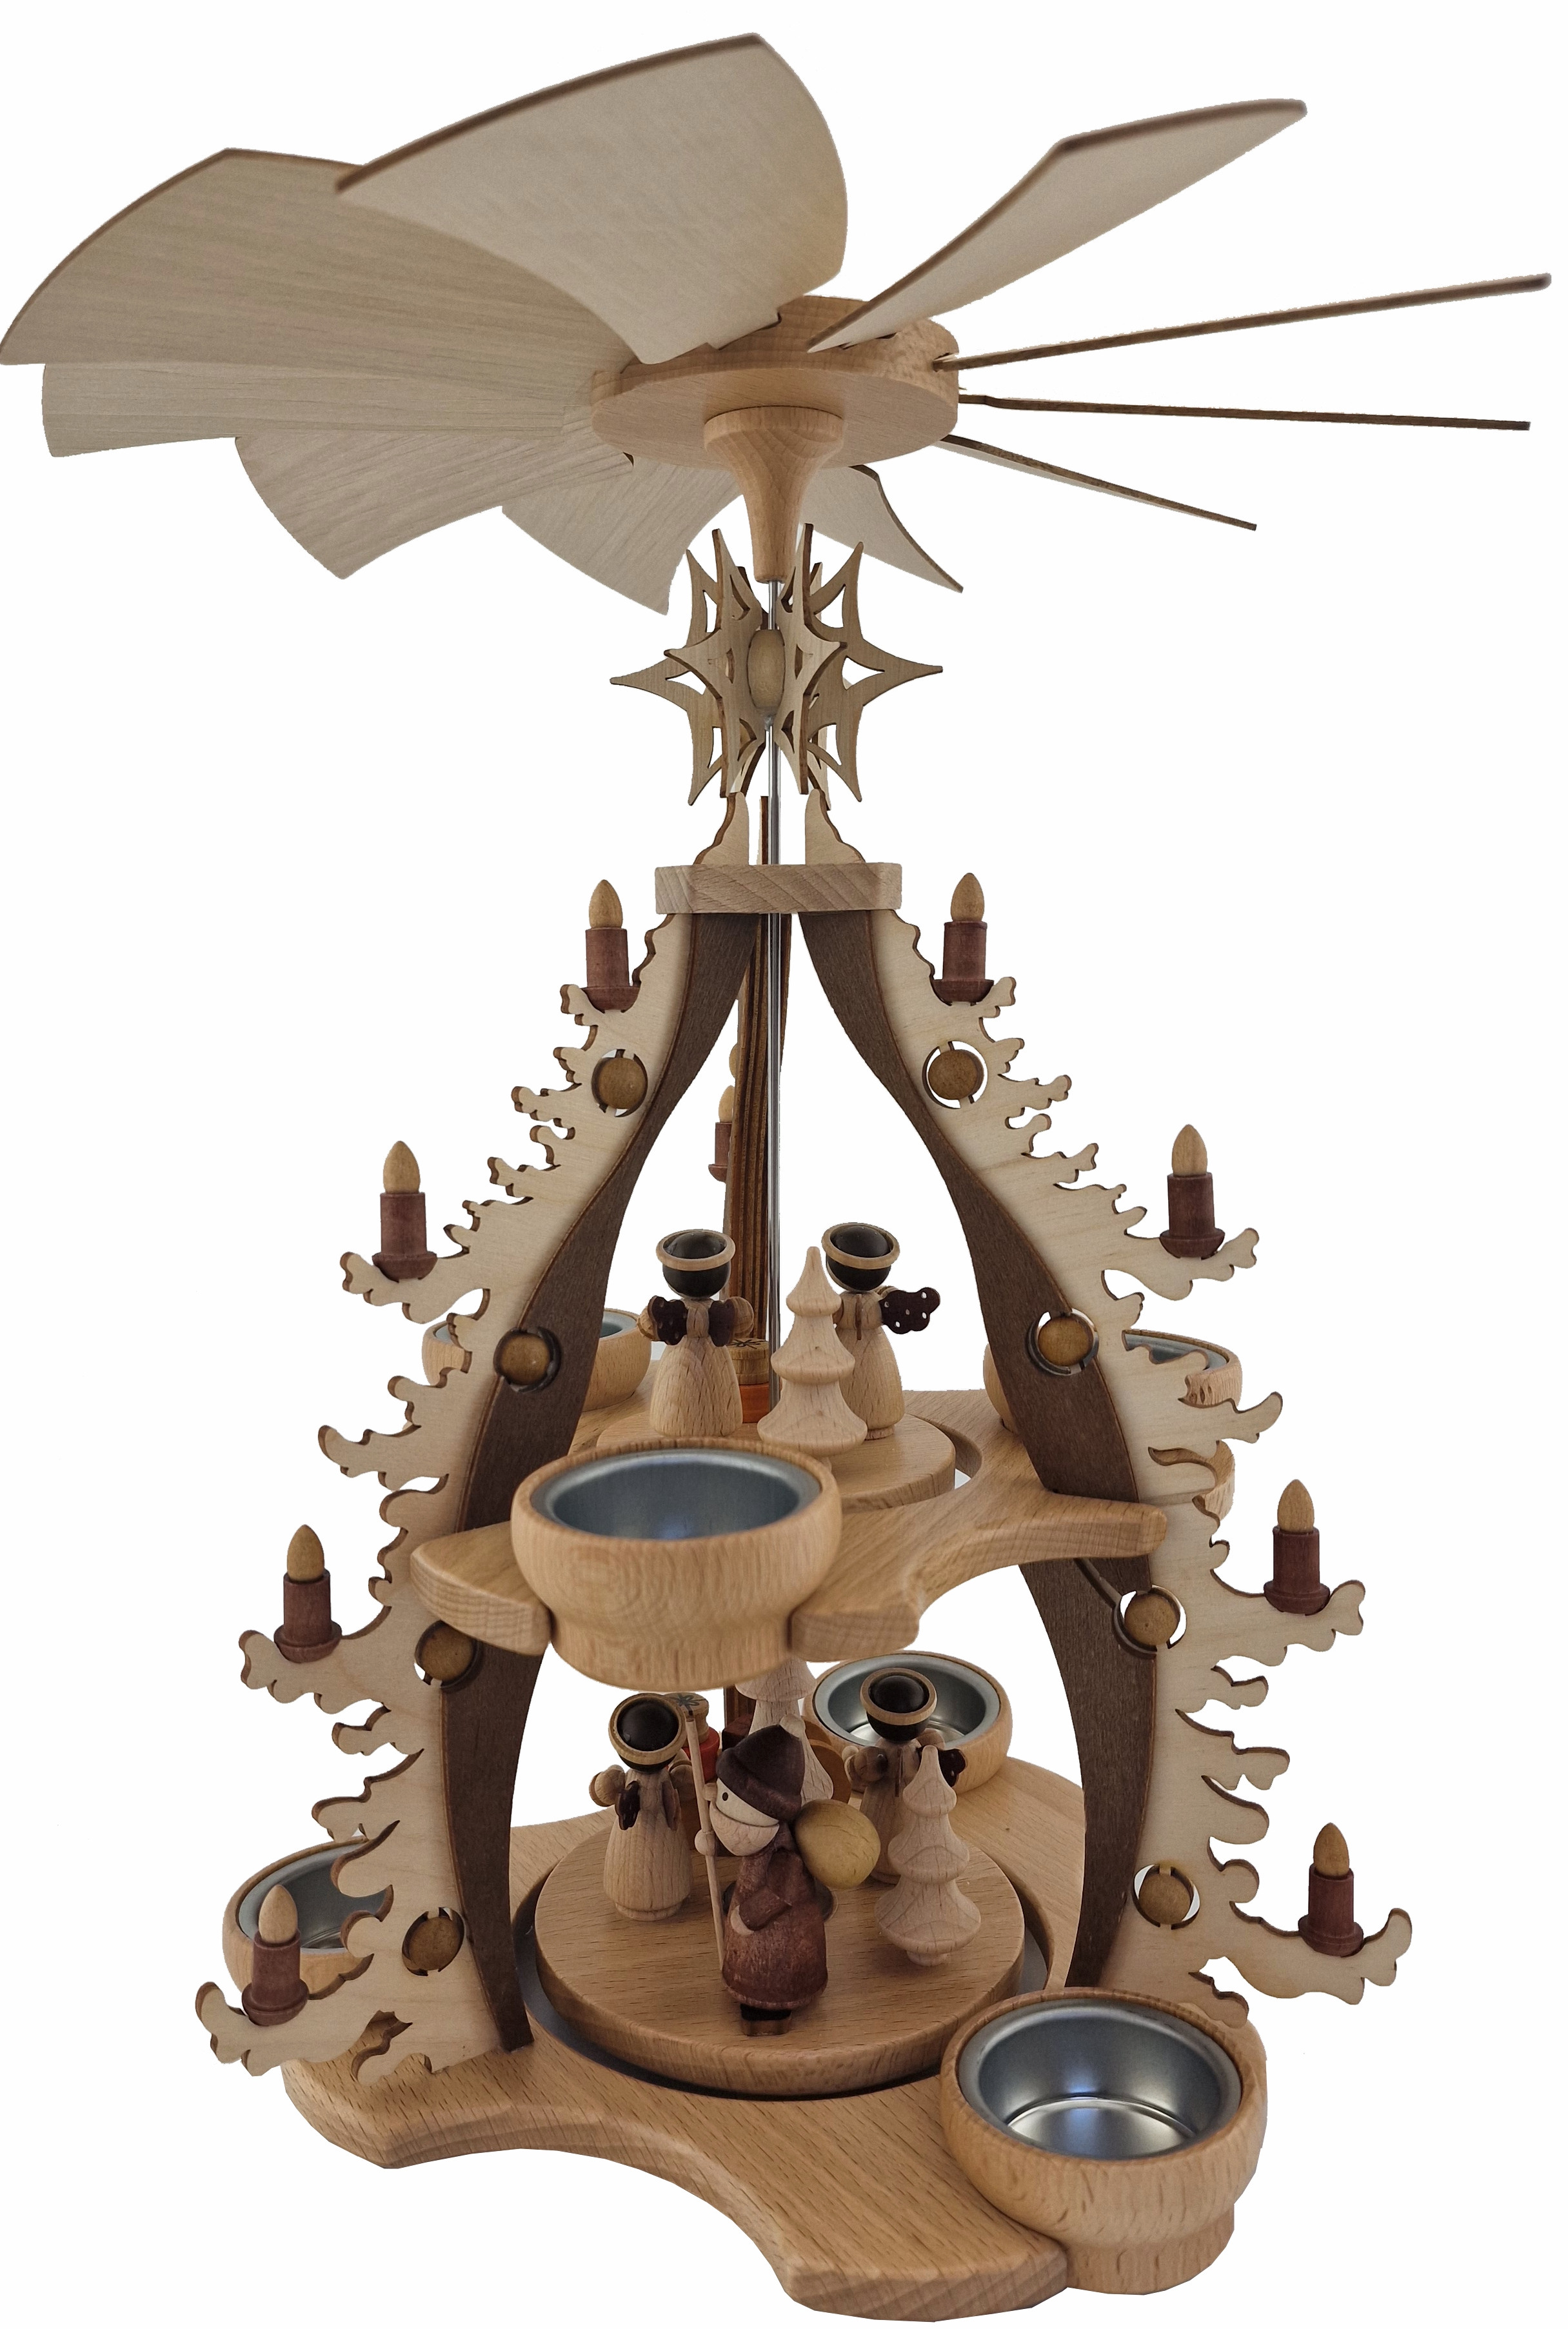 Zeidler Tischpyramide Bescherung, natur, 2-stöckig, für 6 Teelichter